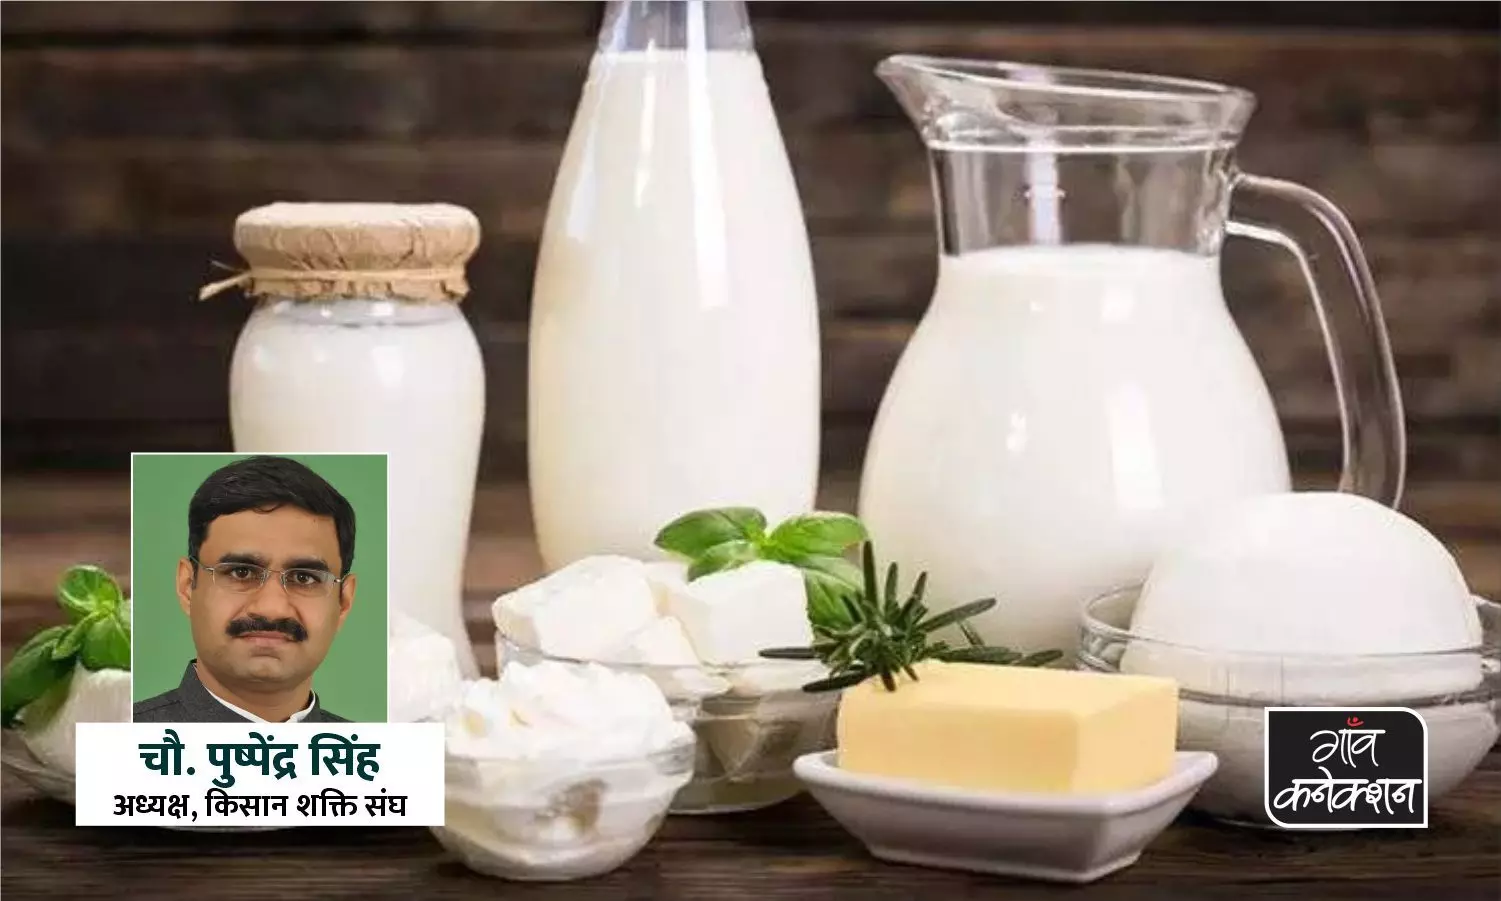 संवाद: दूध उत्पादक किसानों के हितों से ना हो समझौता